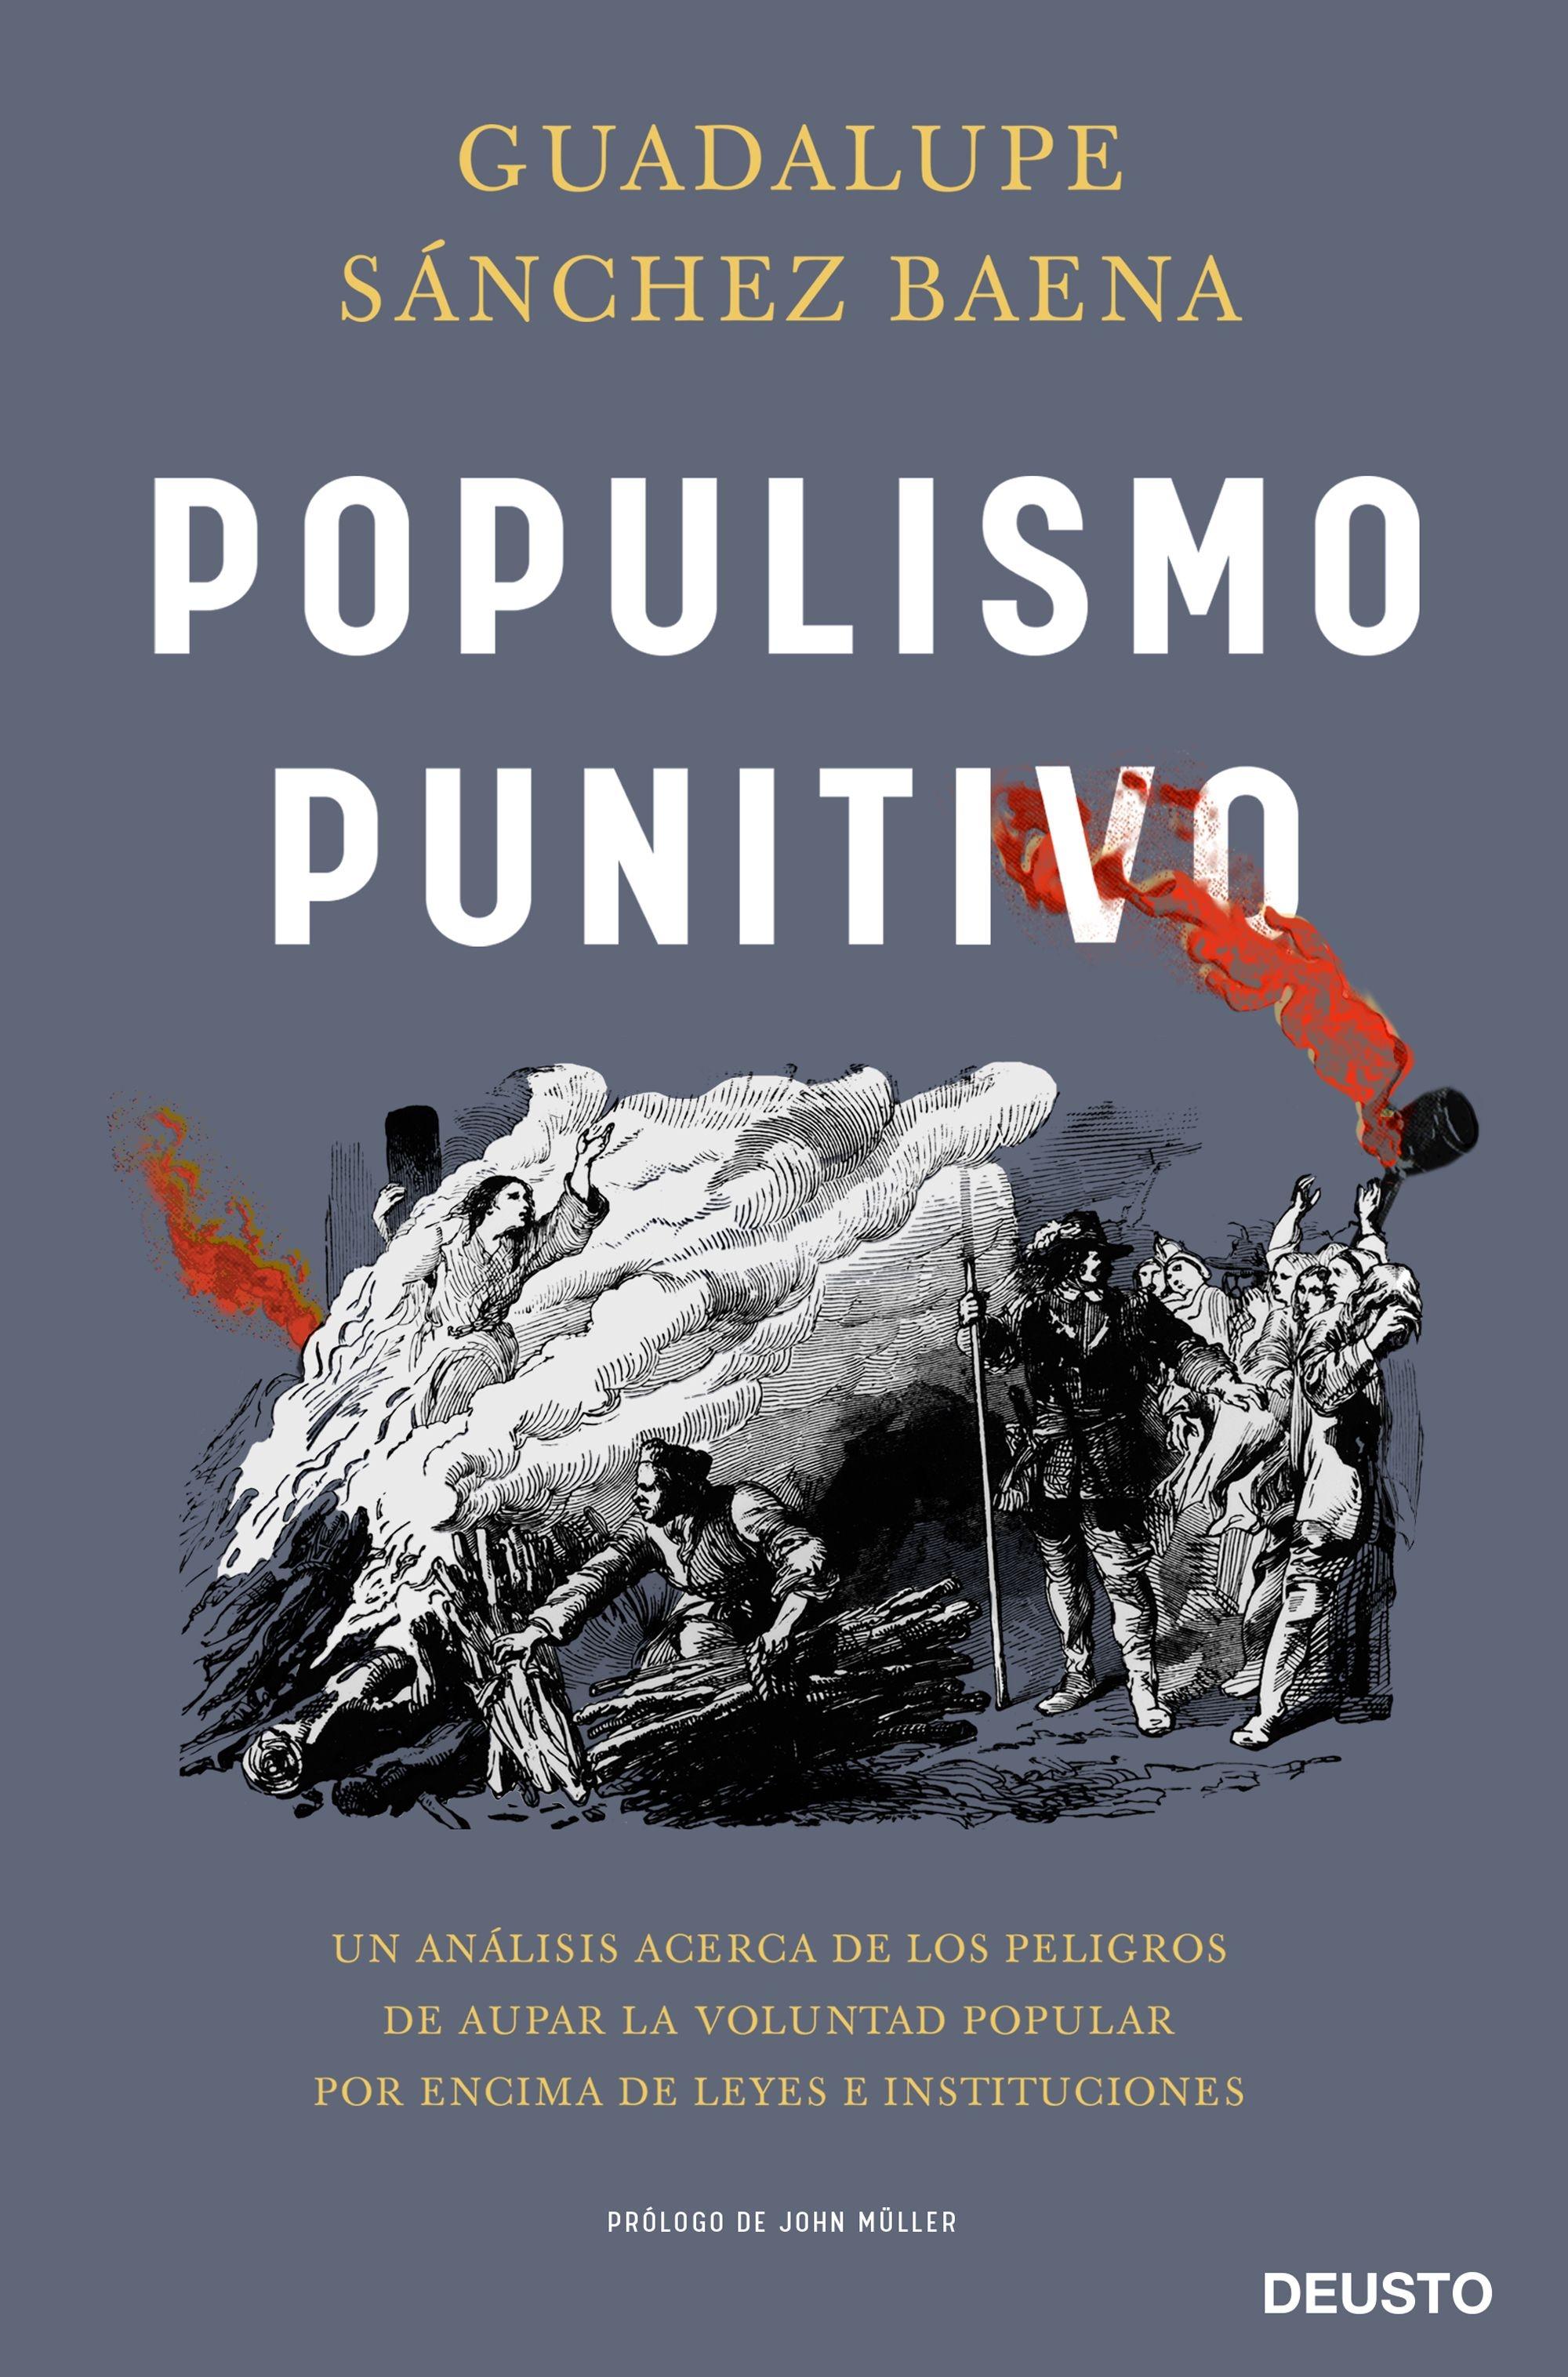 Populismo punitivo "Un análisis acerca de los peligros de aupar la voluntad popular por enci". 